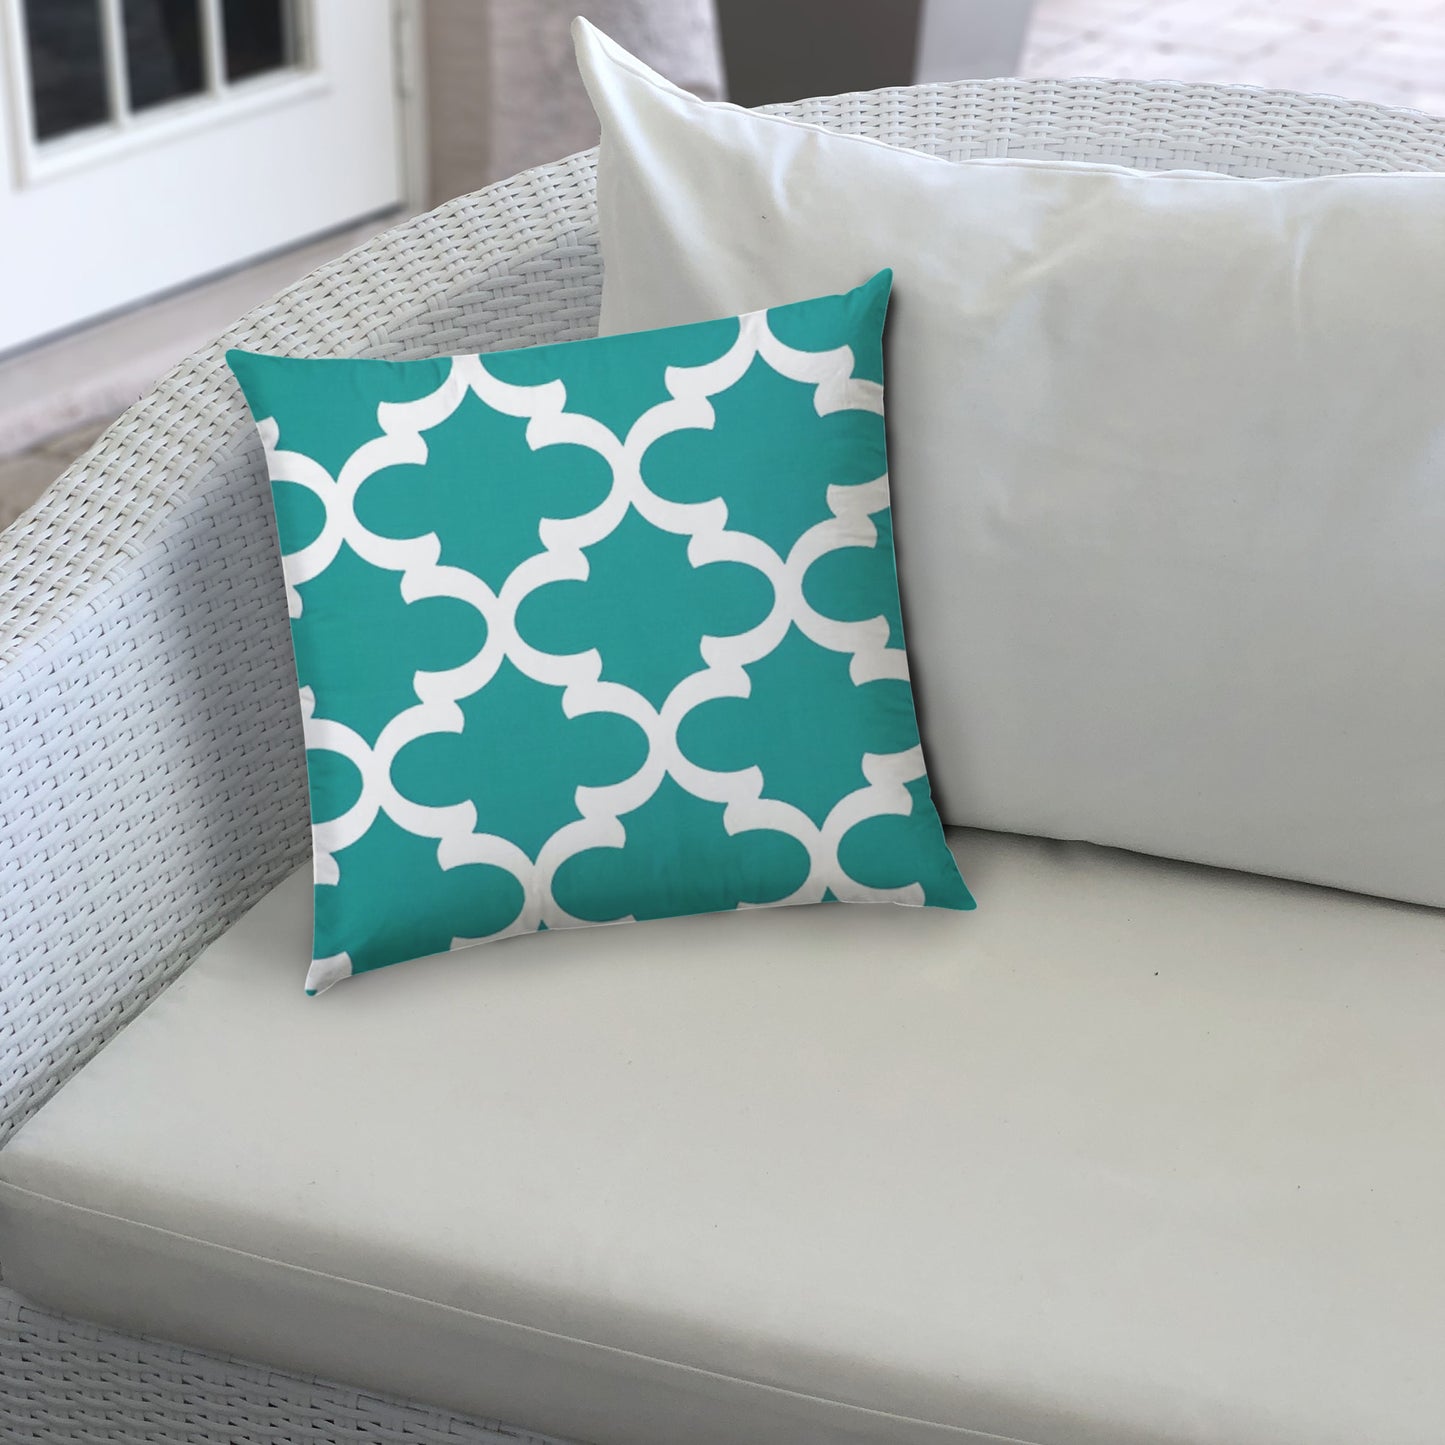 FLANNIGAN Turquoise Jumbo Indoor/Outdoor - Zippered Pillow Cover